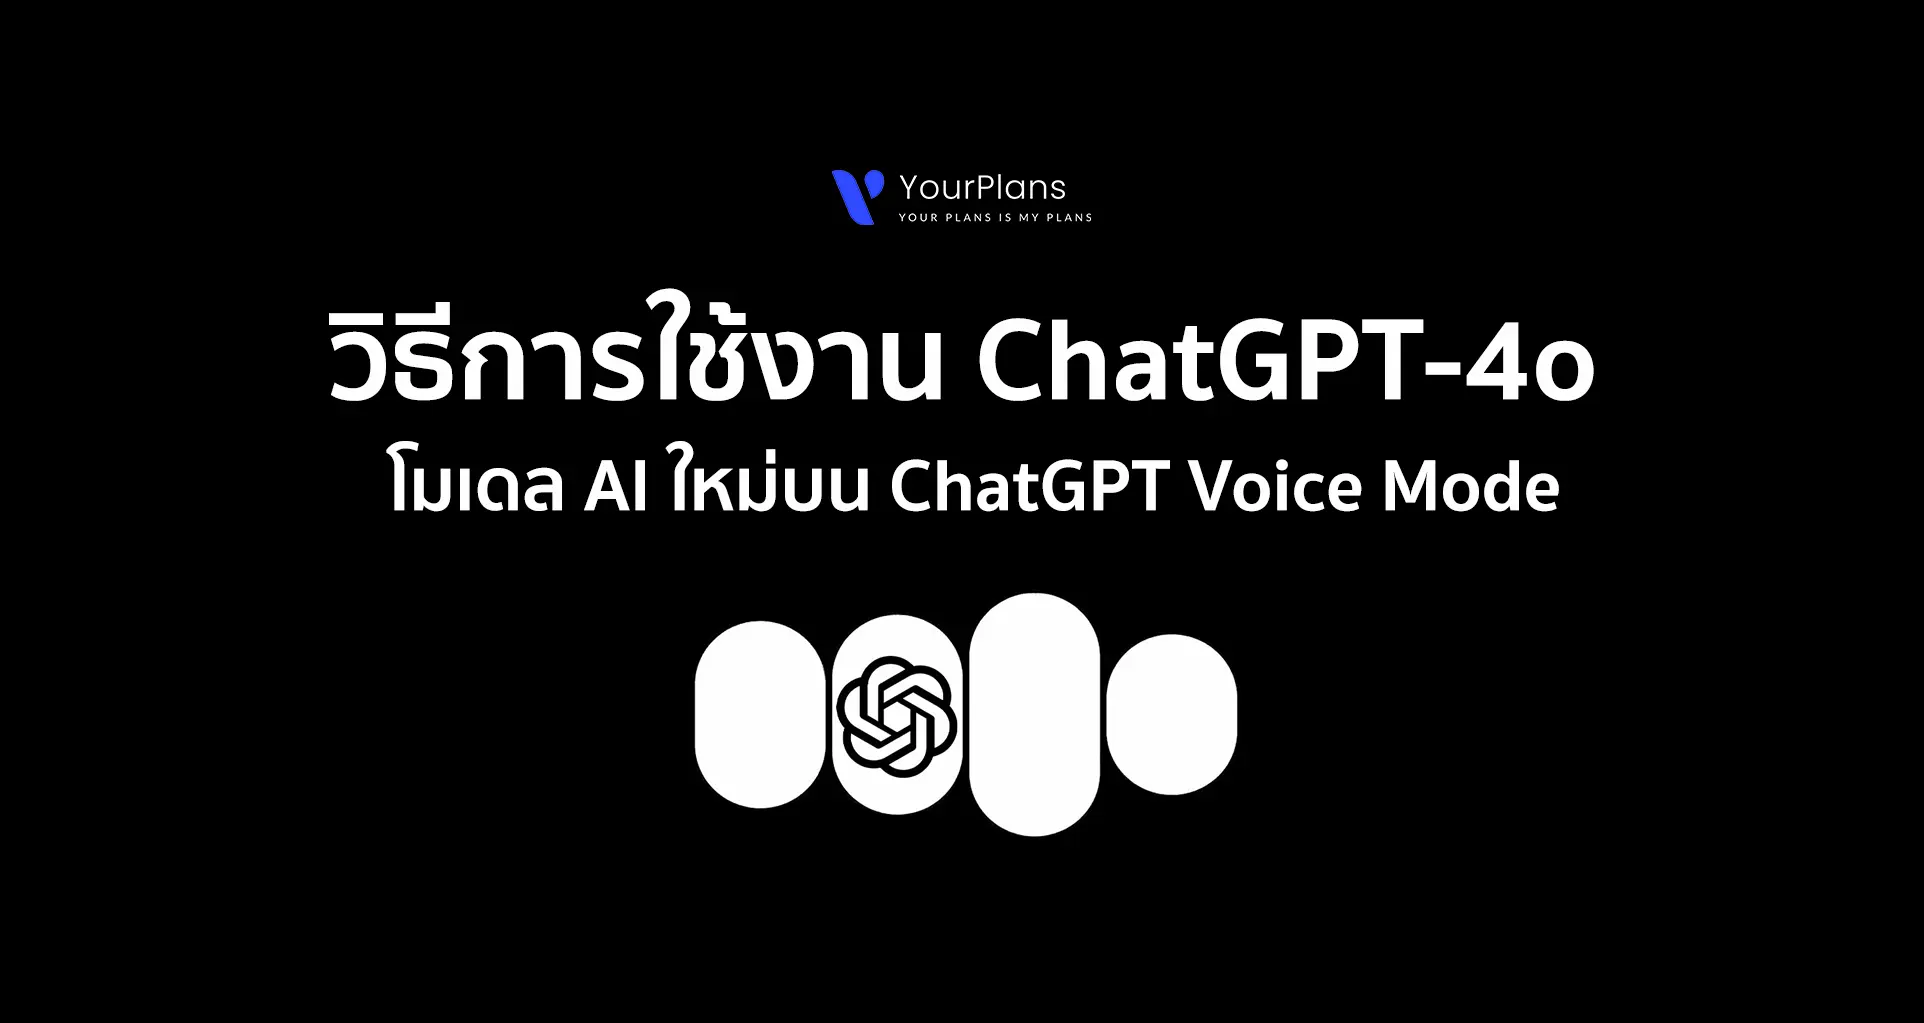 วิธีใช้งาน Chat GPT-4o โมเดล AI ใหม่บน ChatGPT Voice Mode ฟรี!